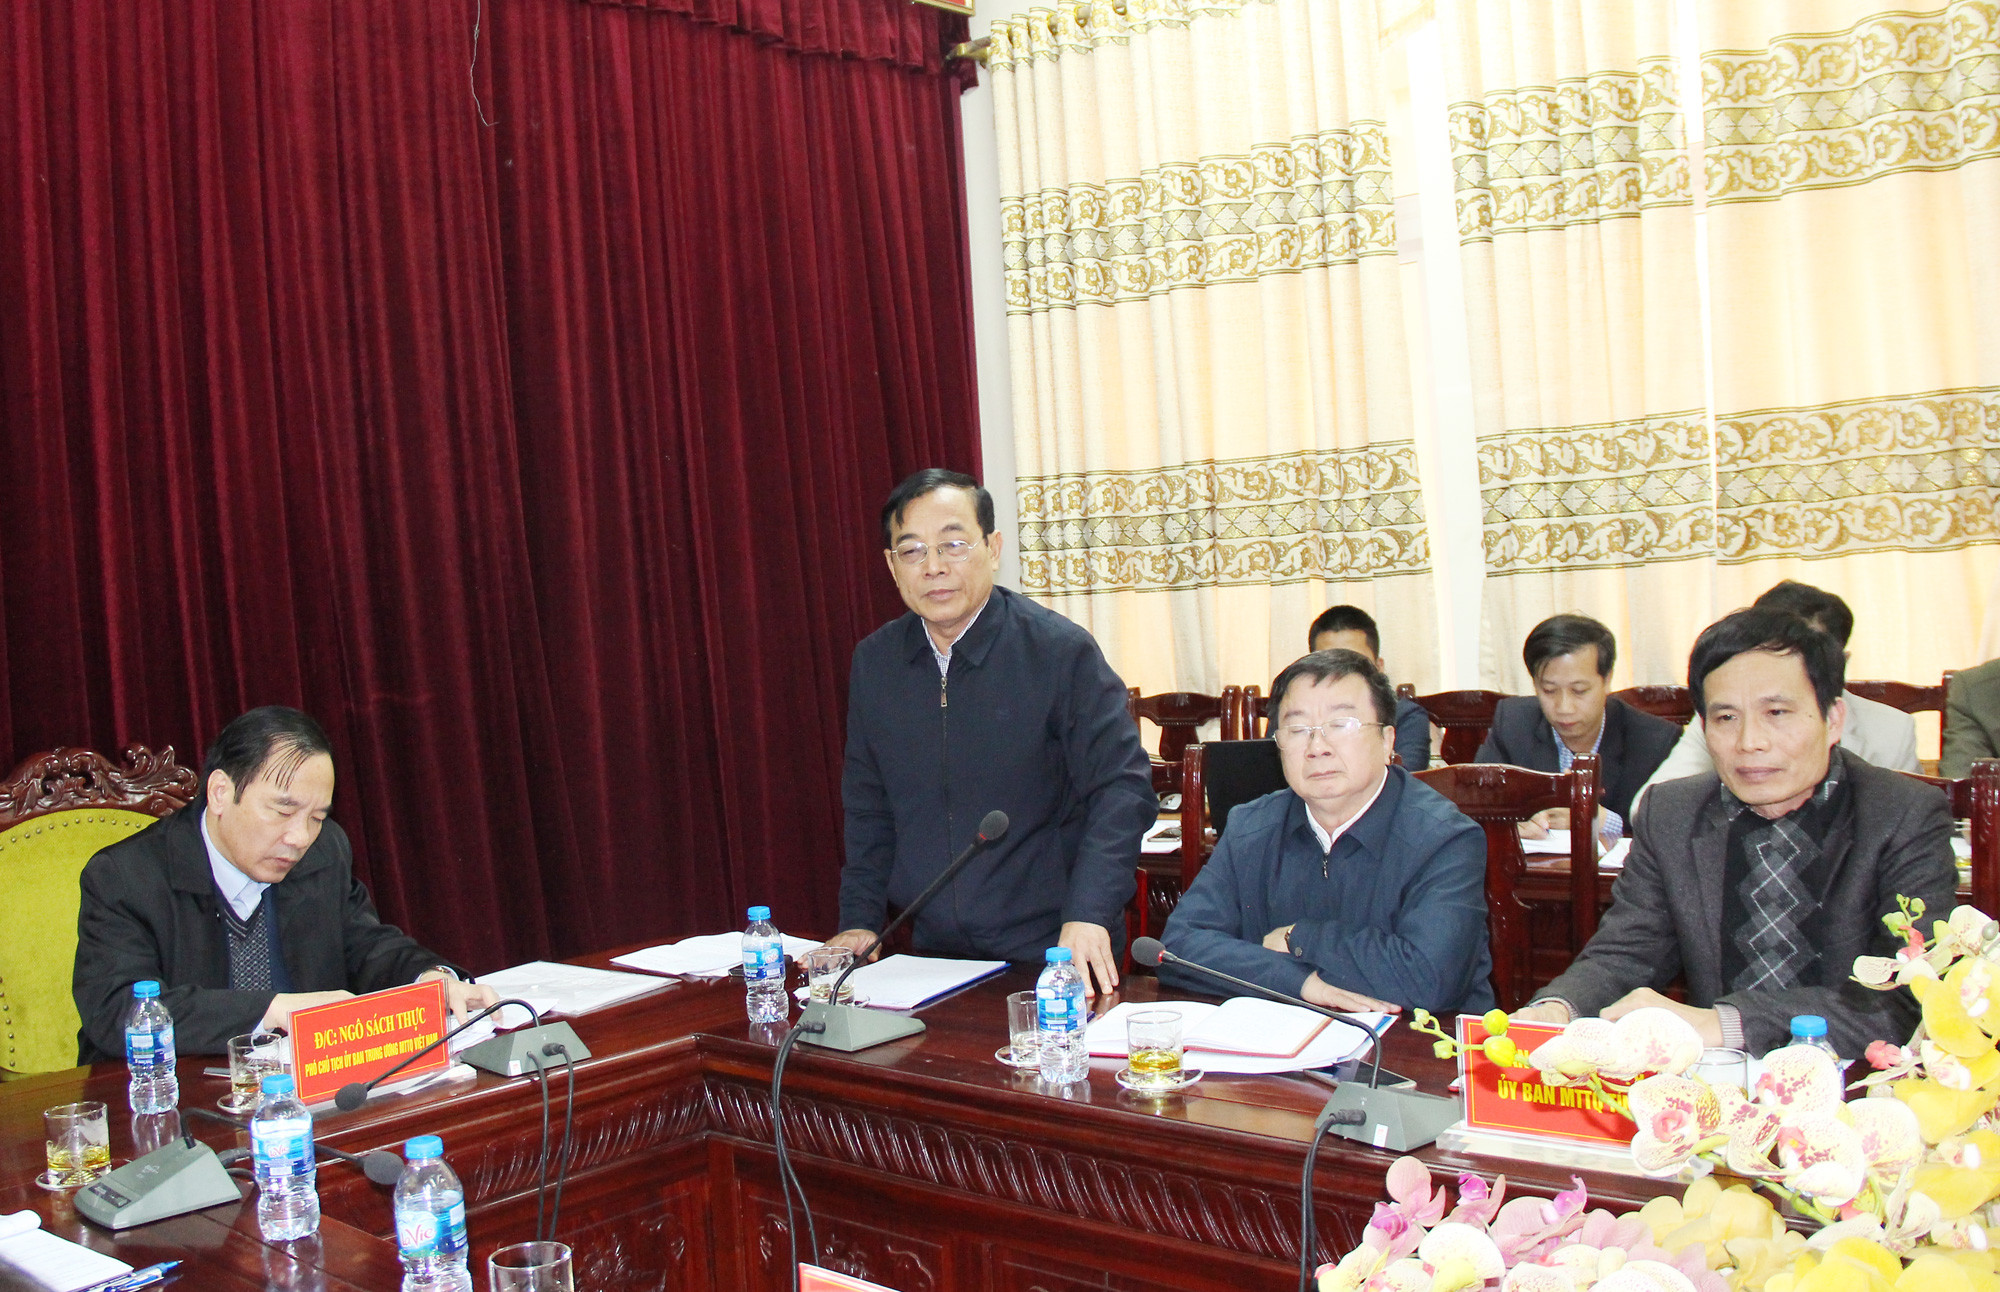 Chủ tịch Ủy ban MTTQ tỉnh Nguyễn Văn Huy kiến nghị với Ủy ban Trung ương MTTQ Việt Nam có hướng dẫn để đảm bảo sự thống nhất trong việc triển khai thực hiện Nghị quyết Trung ương 6 (khóa XII) về sắp xếp bộ máy. Ảnh: Mai Hoa